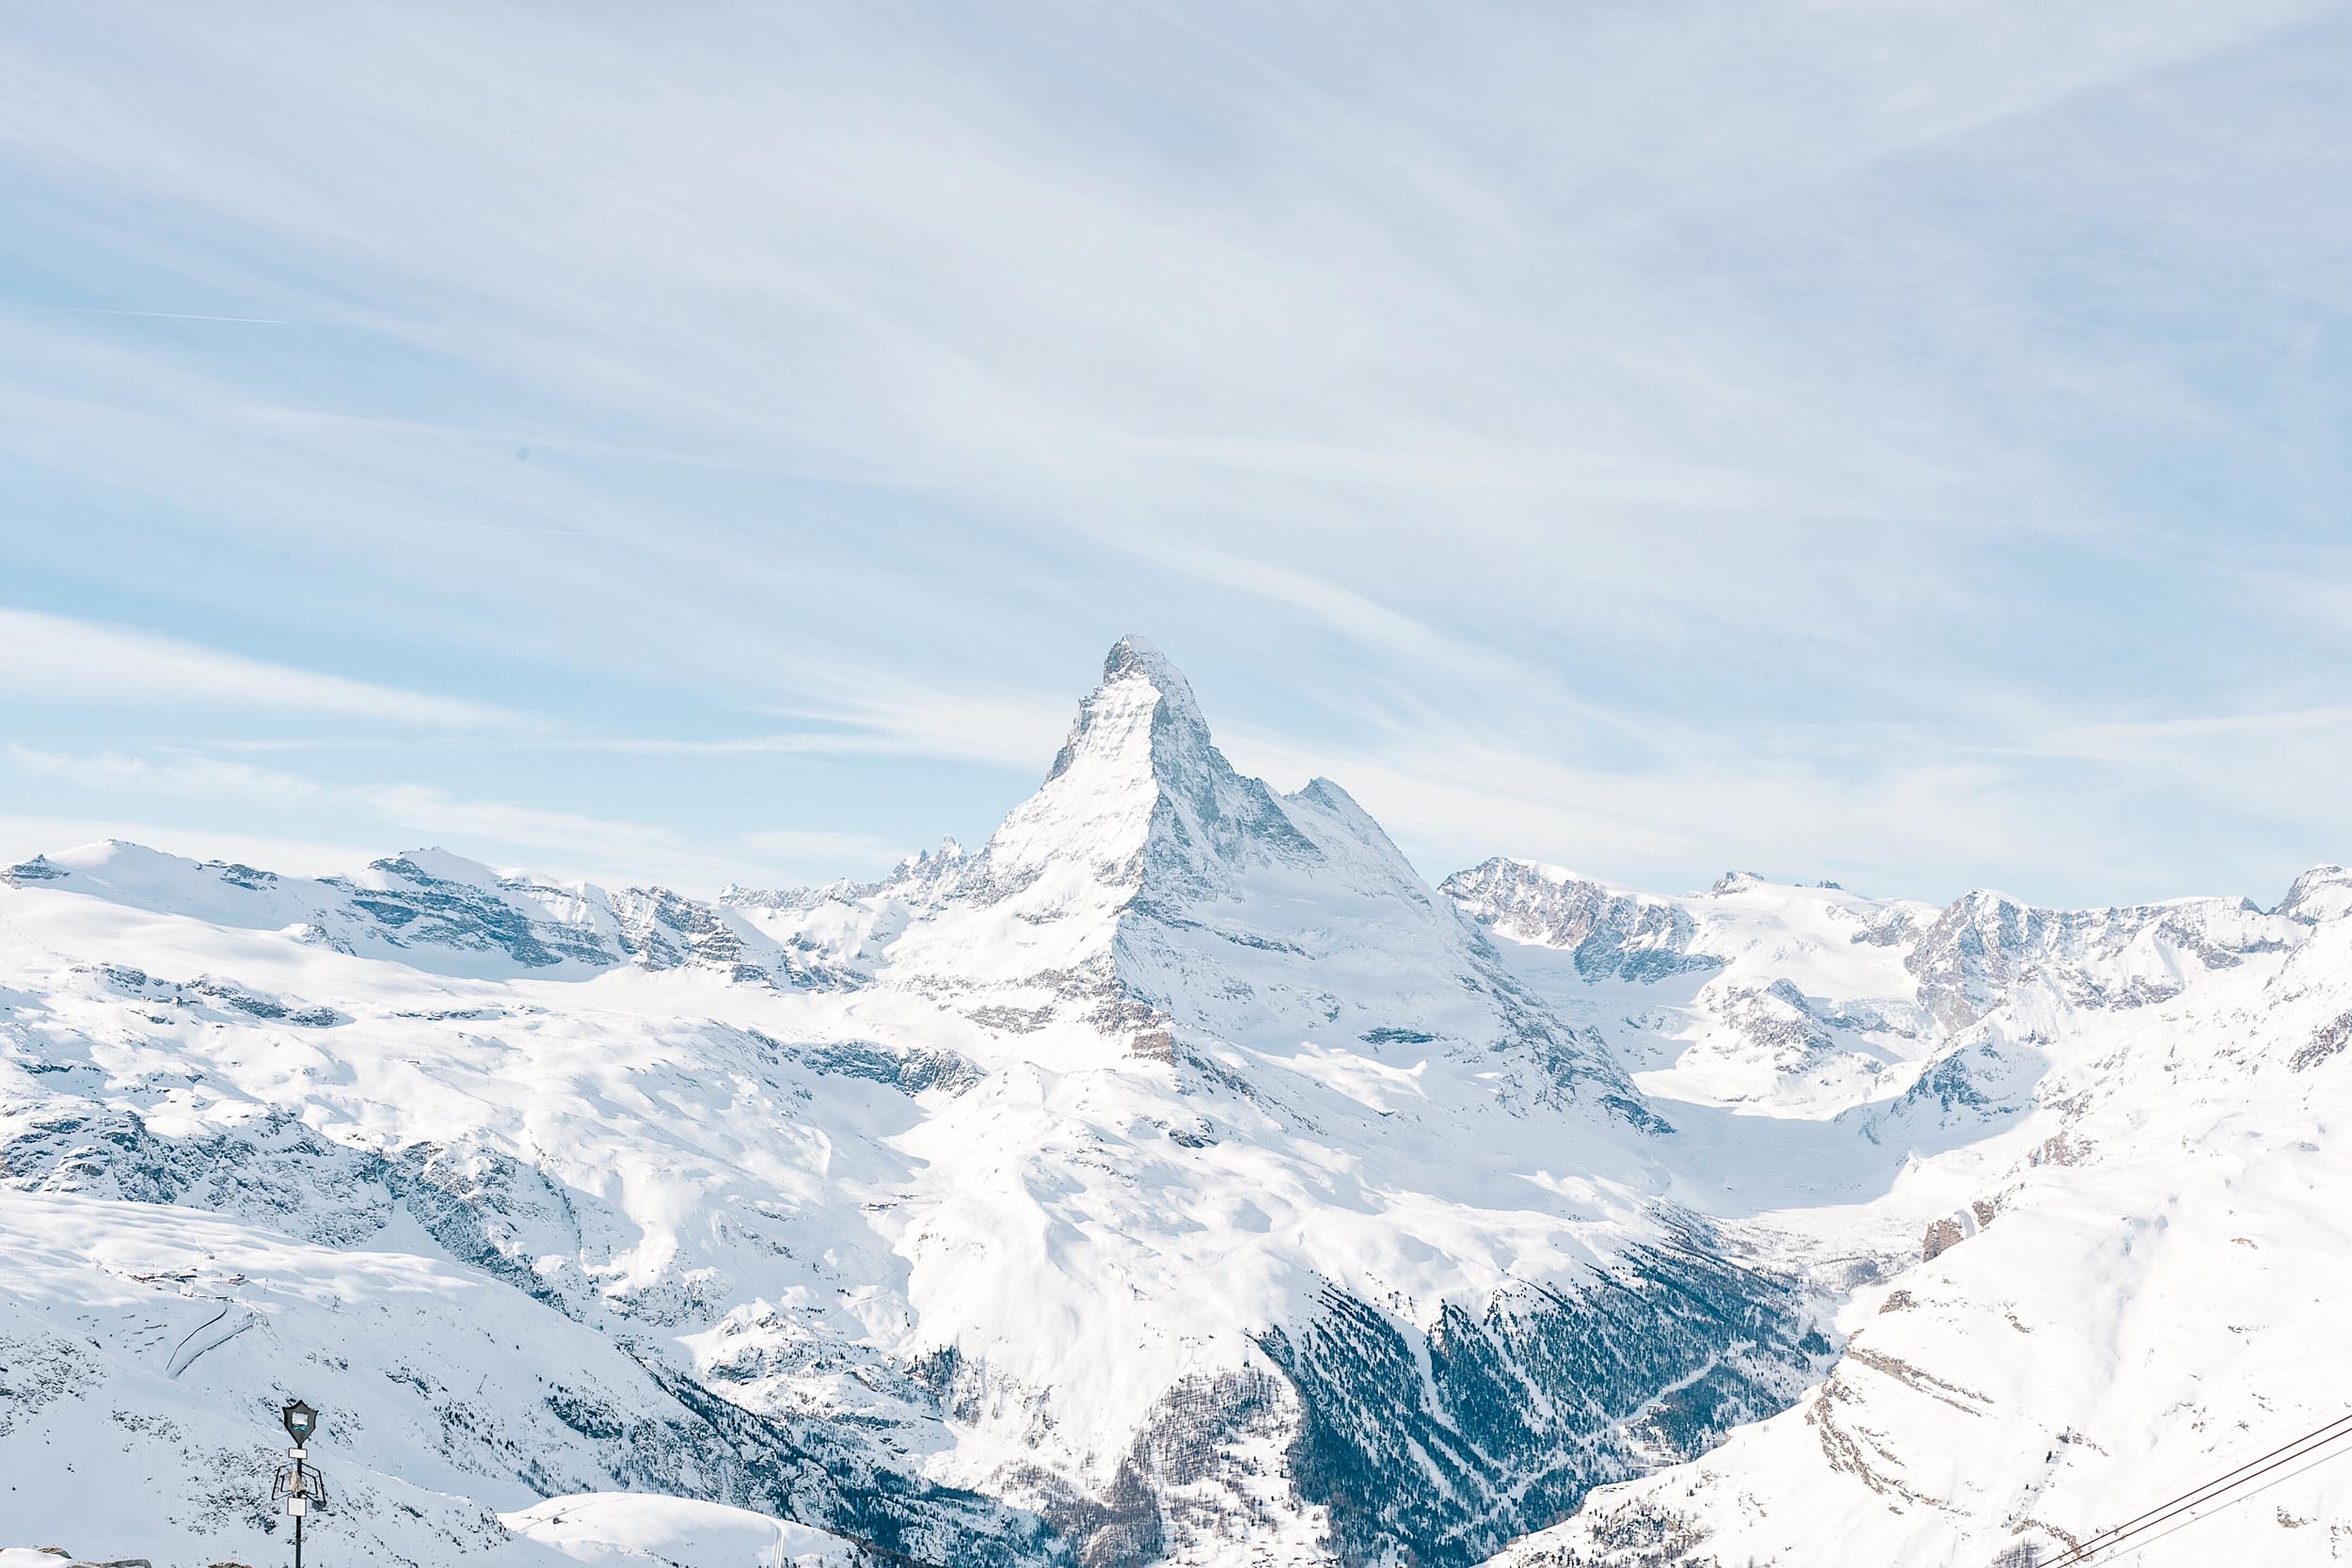 The famous Matterhorn of Zermatt